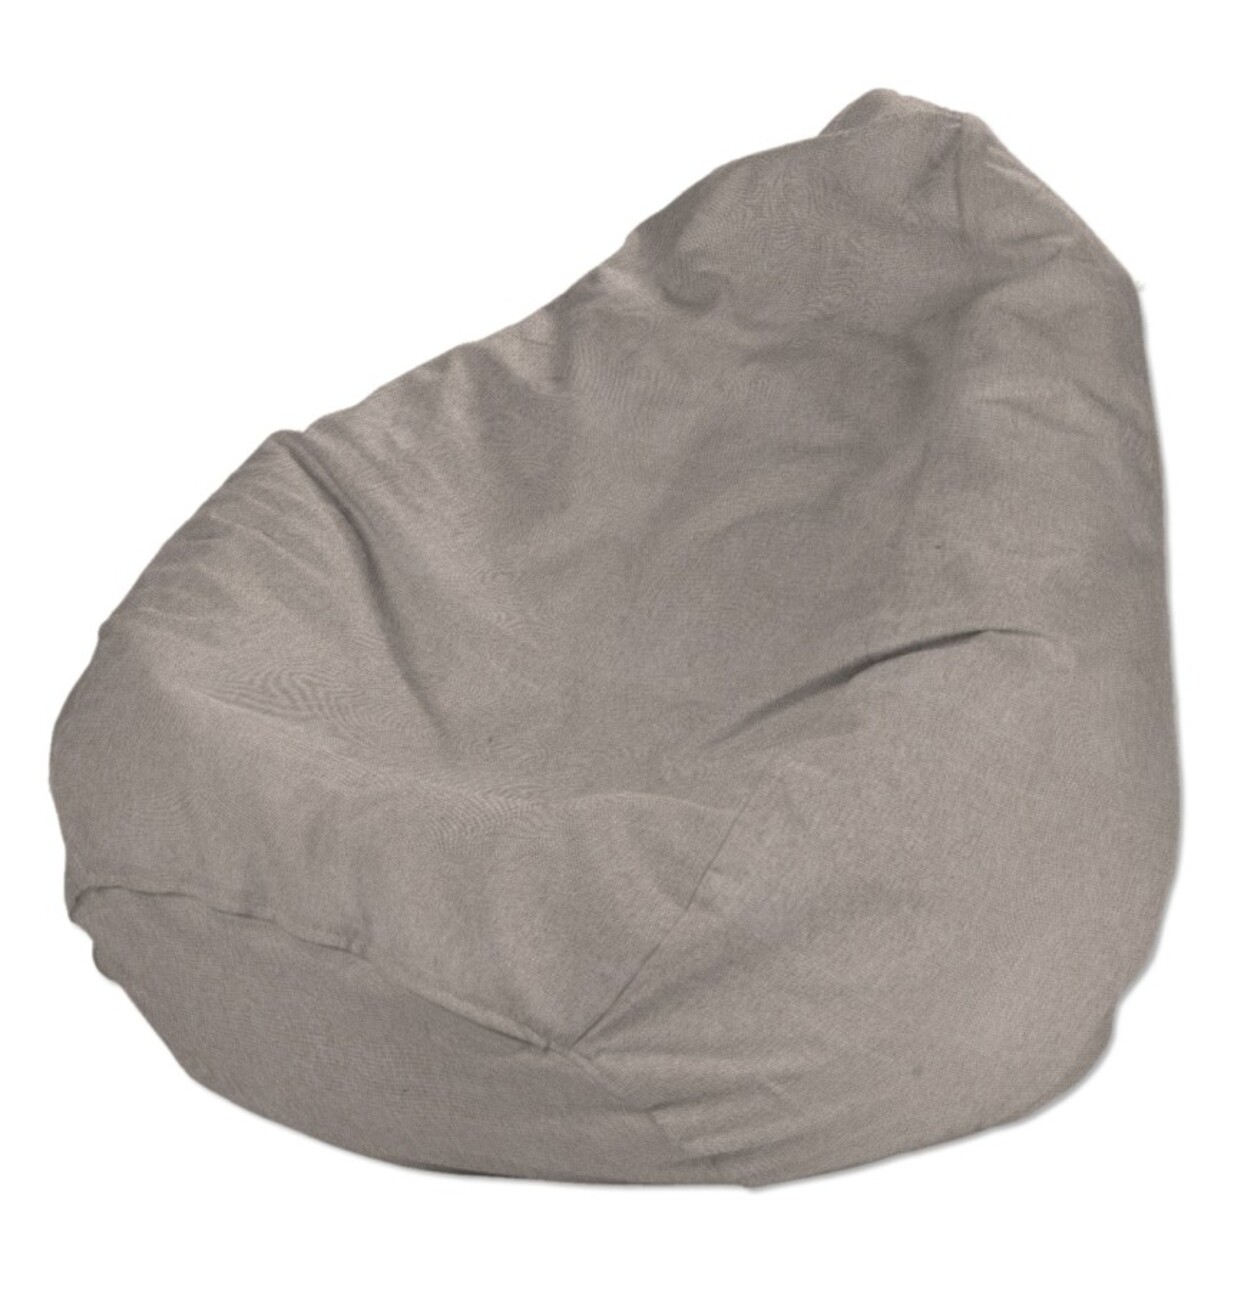 Bezug für Sitzsack, beige-grau, Bezug für Sitzsack Ø80 x 115 cm, Etna (705- günstig online kaufen